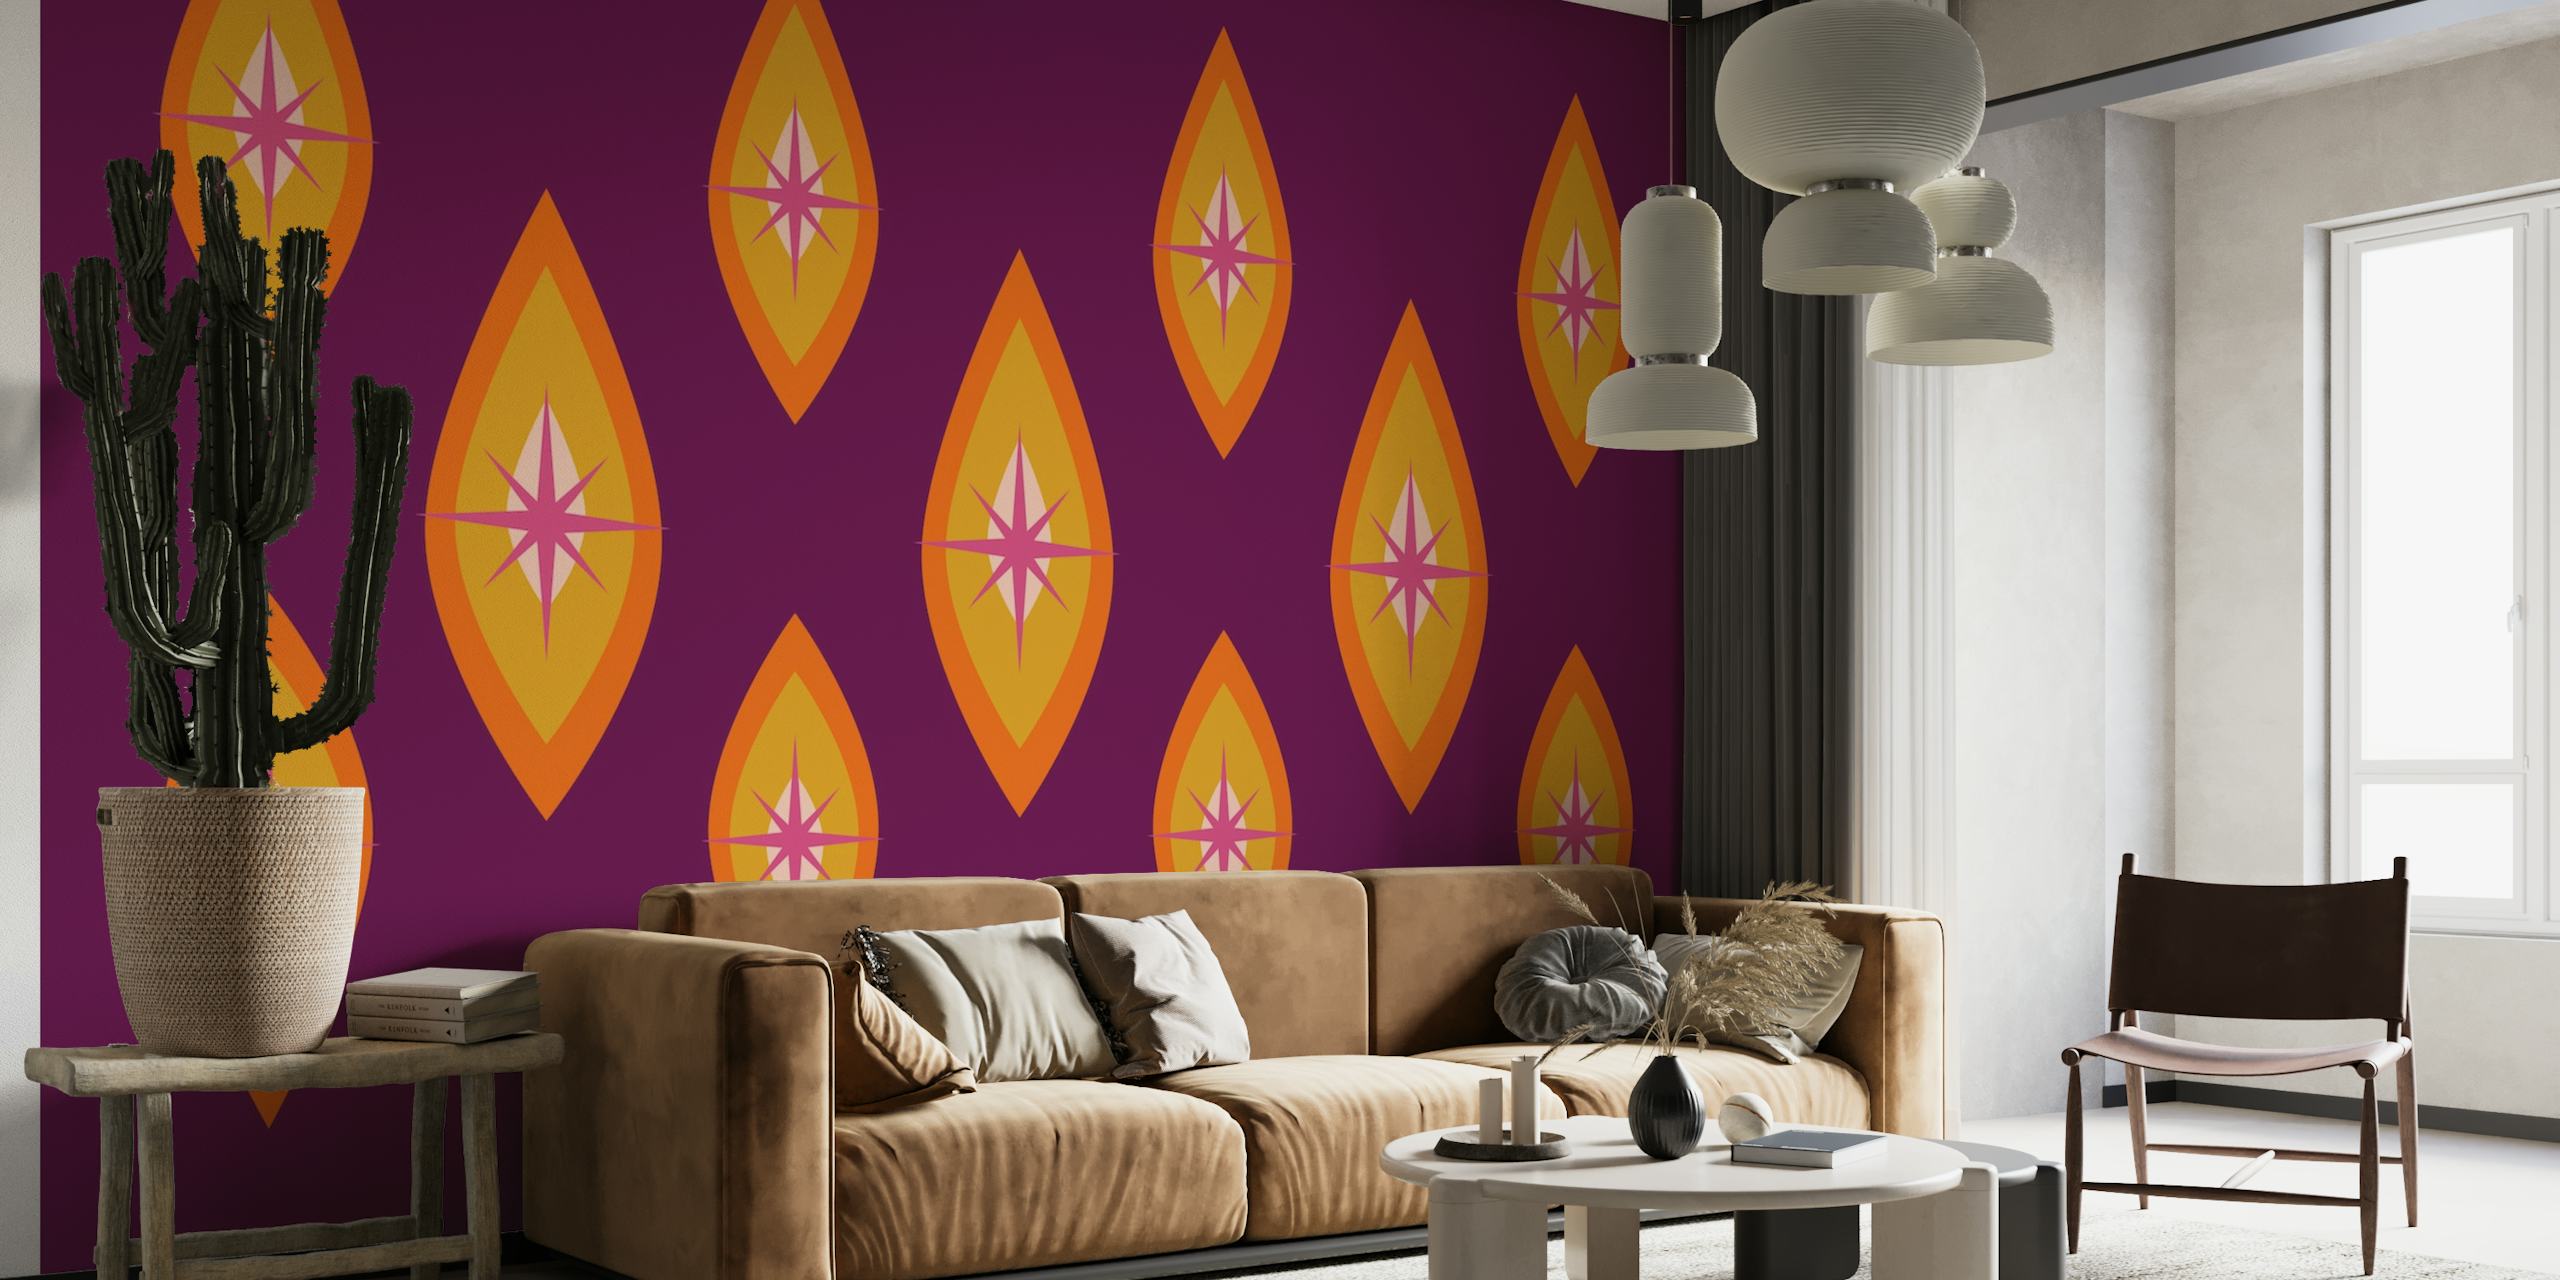 Retro-inspirierte Fototapete „Seventies Neon“ mit geometrischen Formen auf violettem Hintergrund